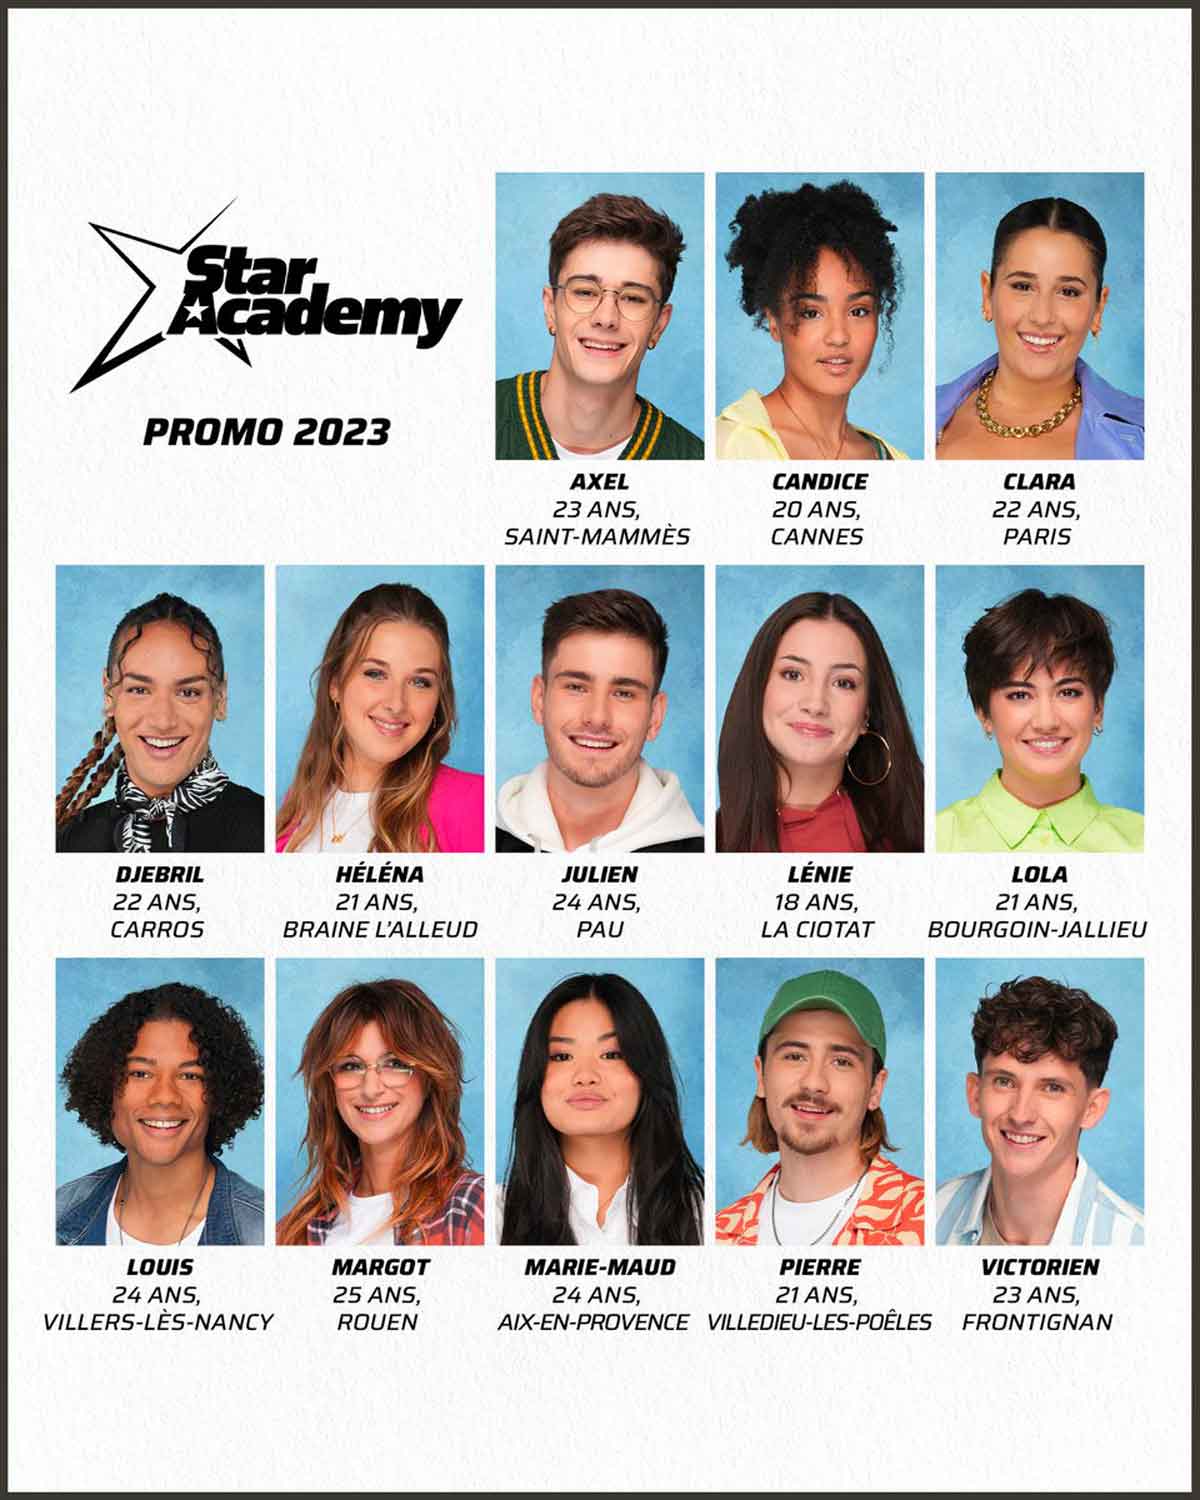 Star Academy: Vitaa et James Blunt, parrains de la saison 2023